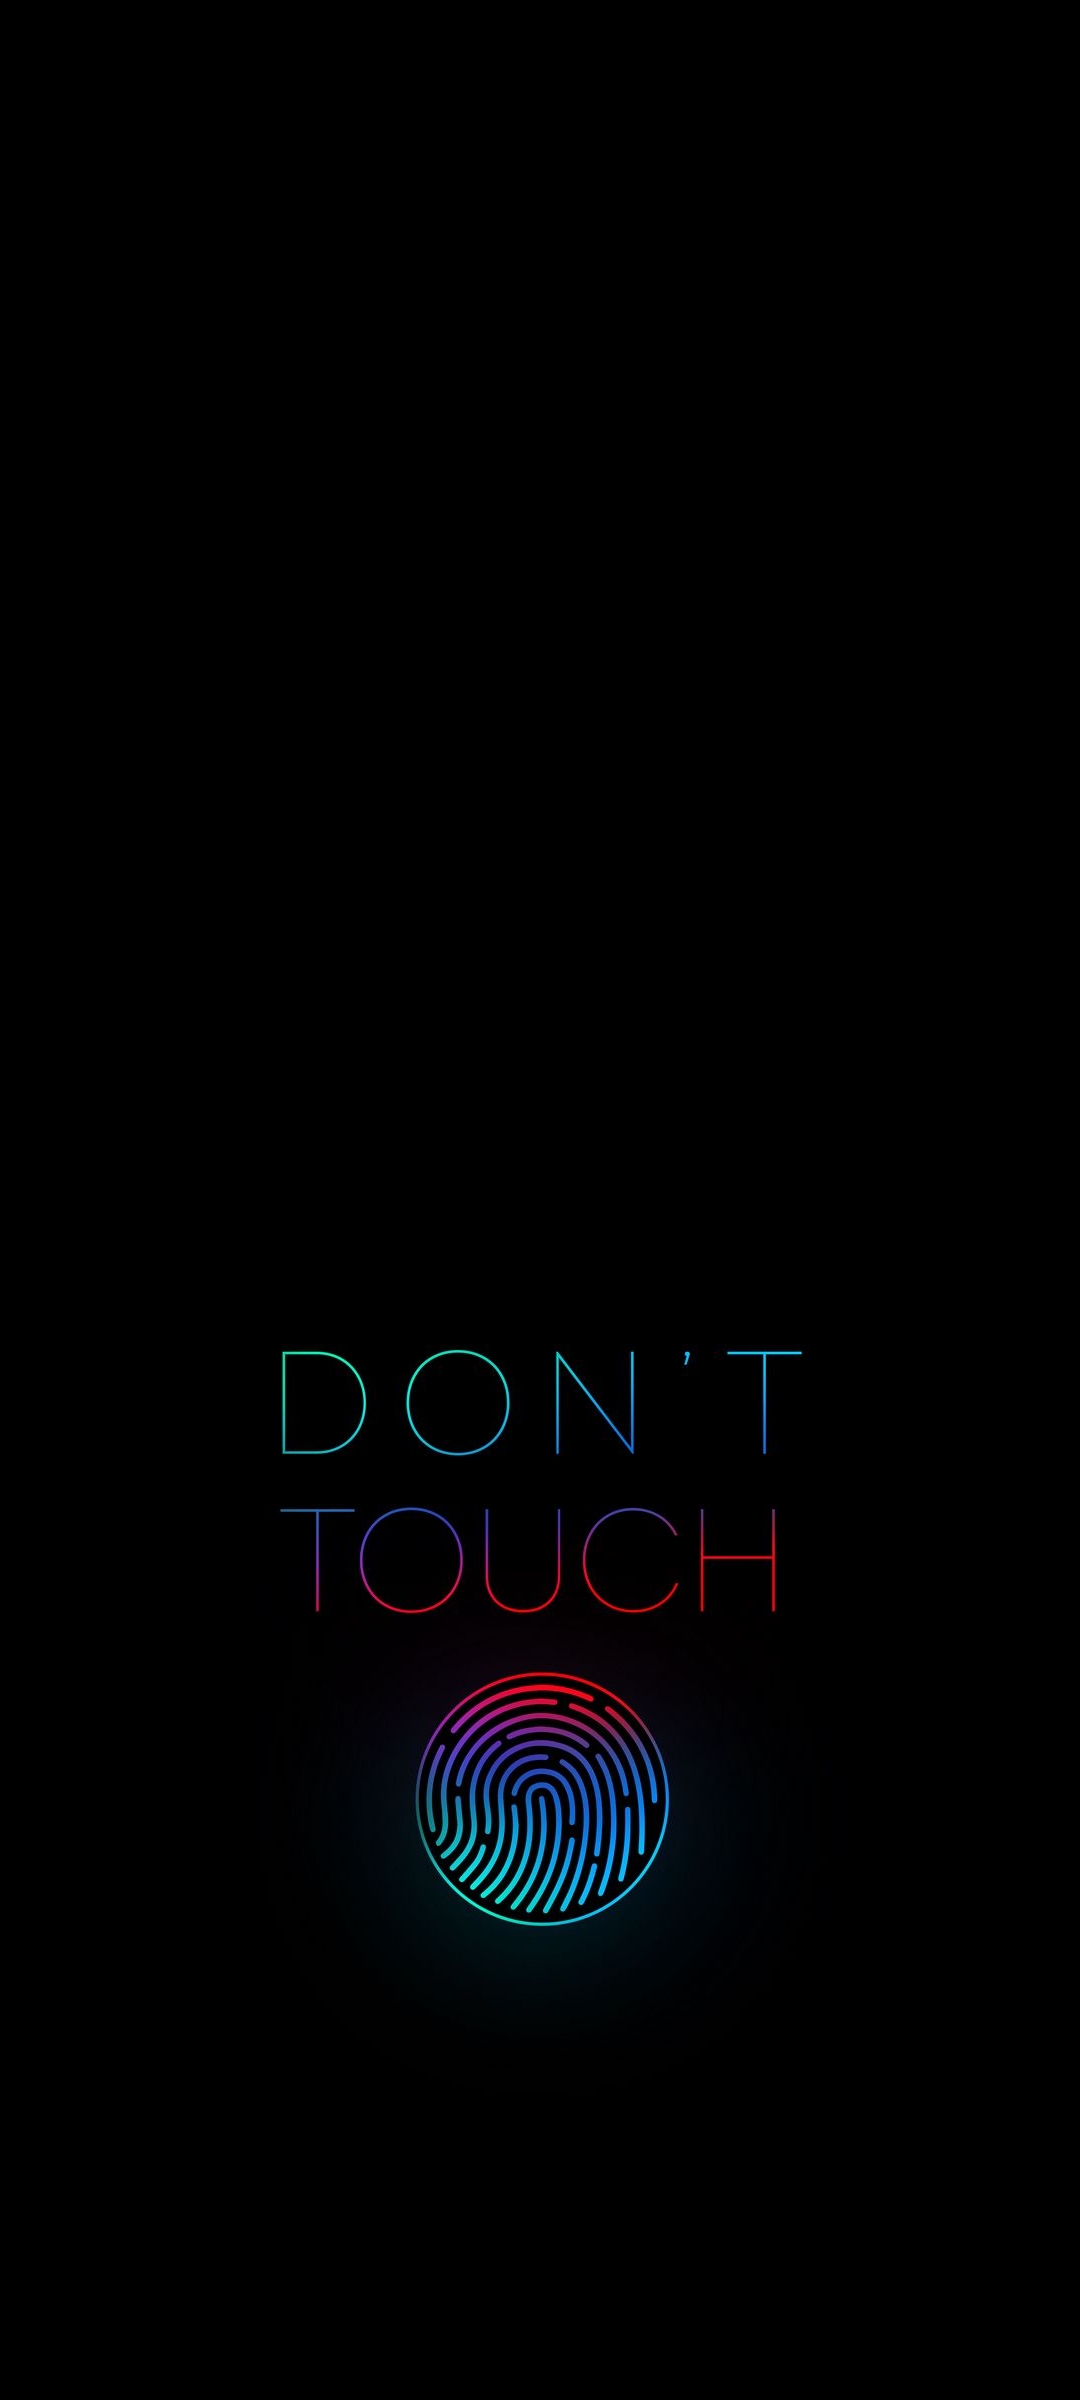 Fingerprint Don't Touch Black Phone Wallpaper